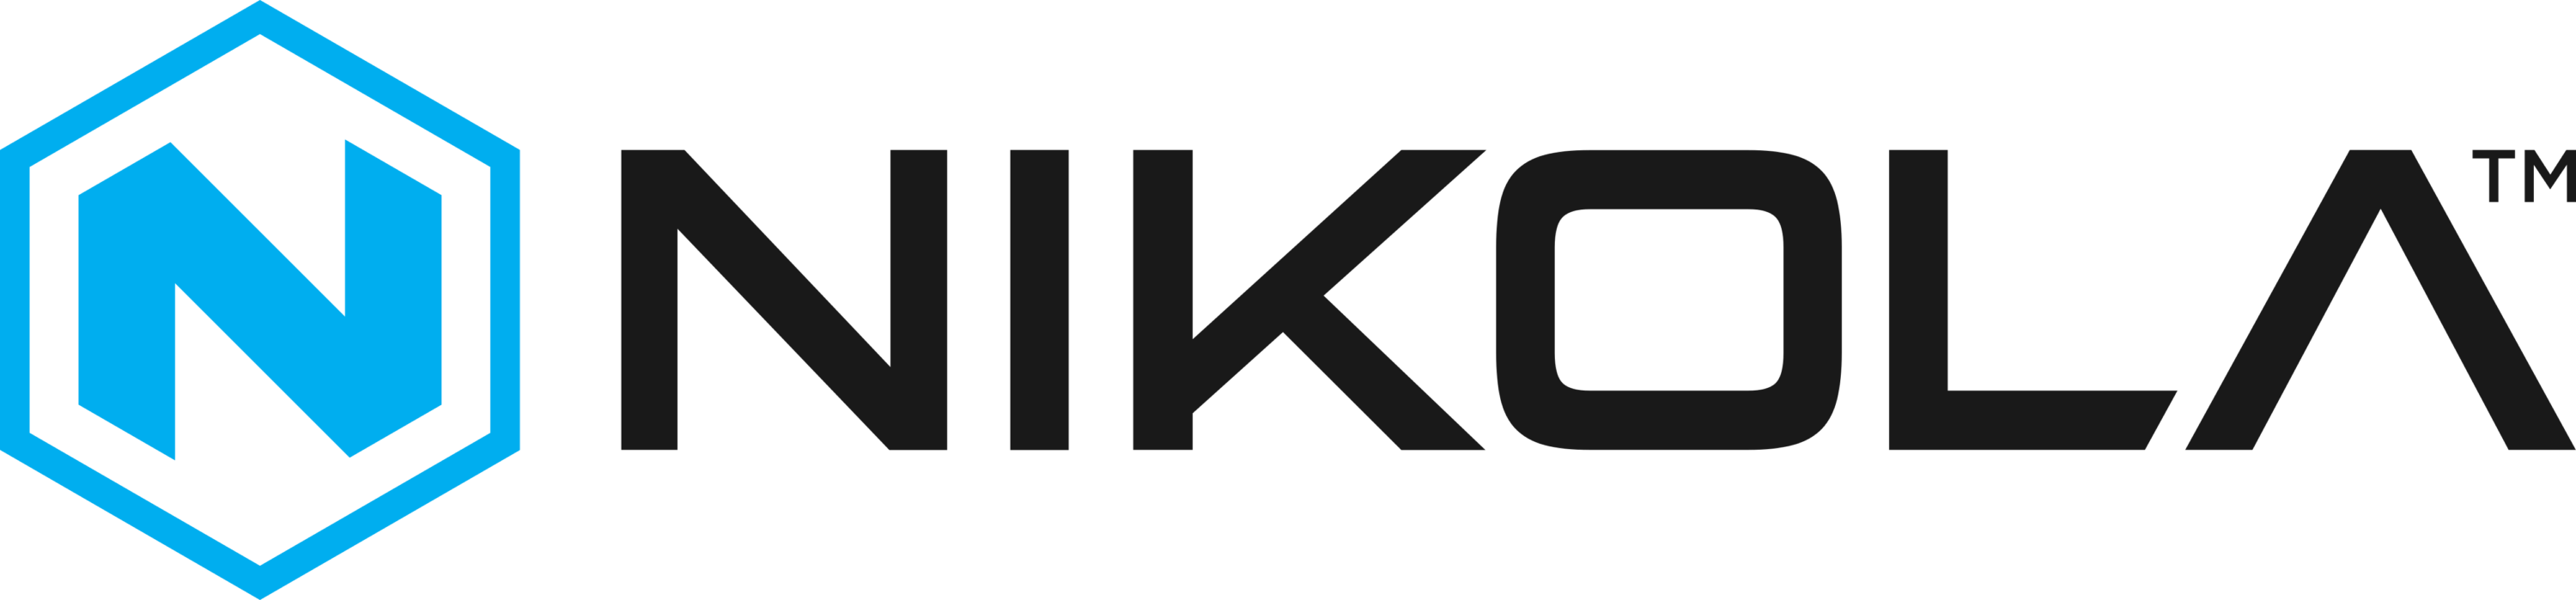 Nikola Motor Company Logo horizontally